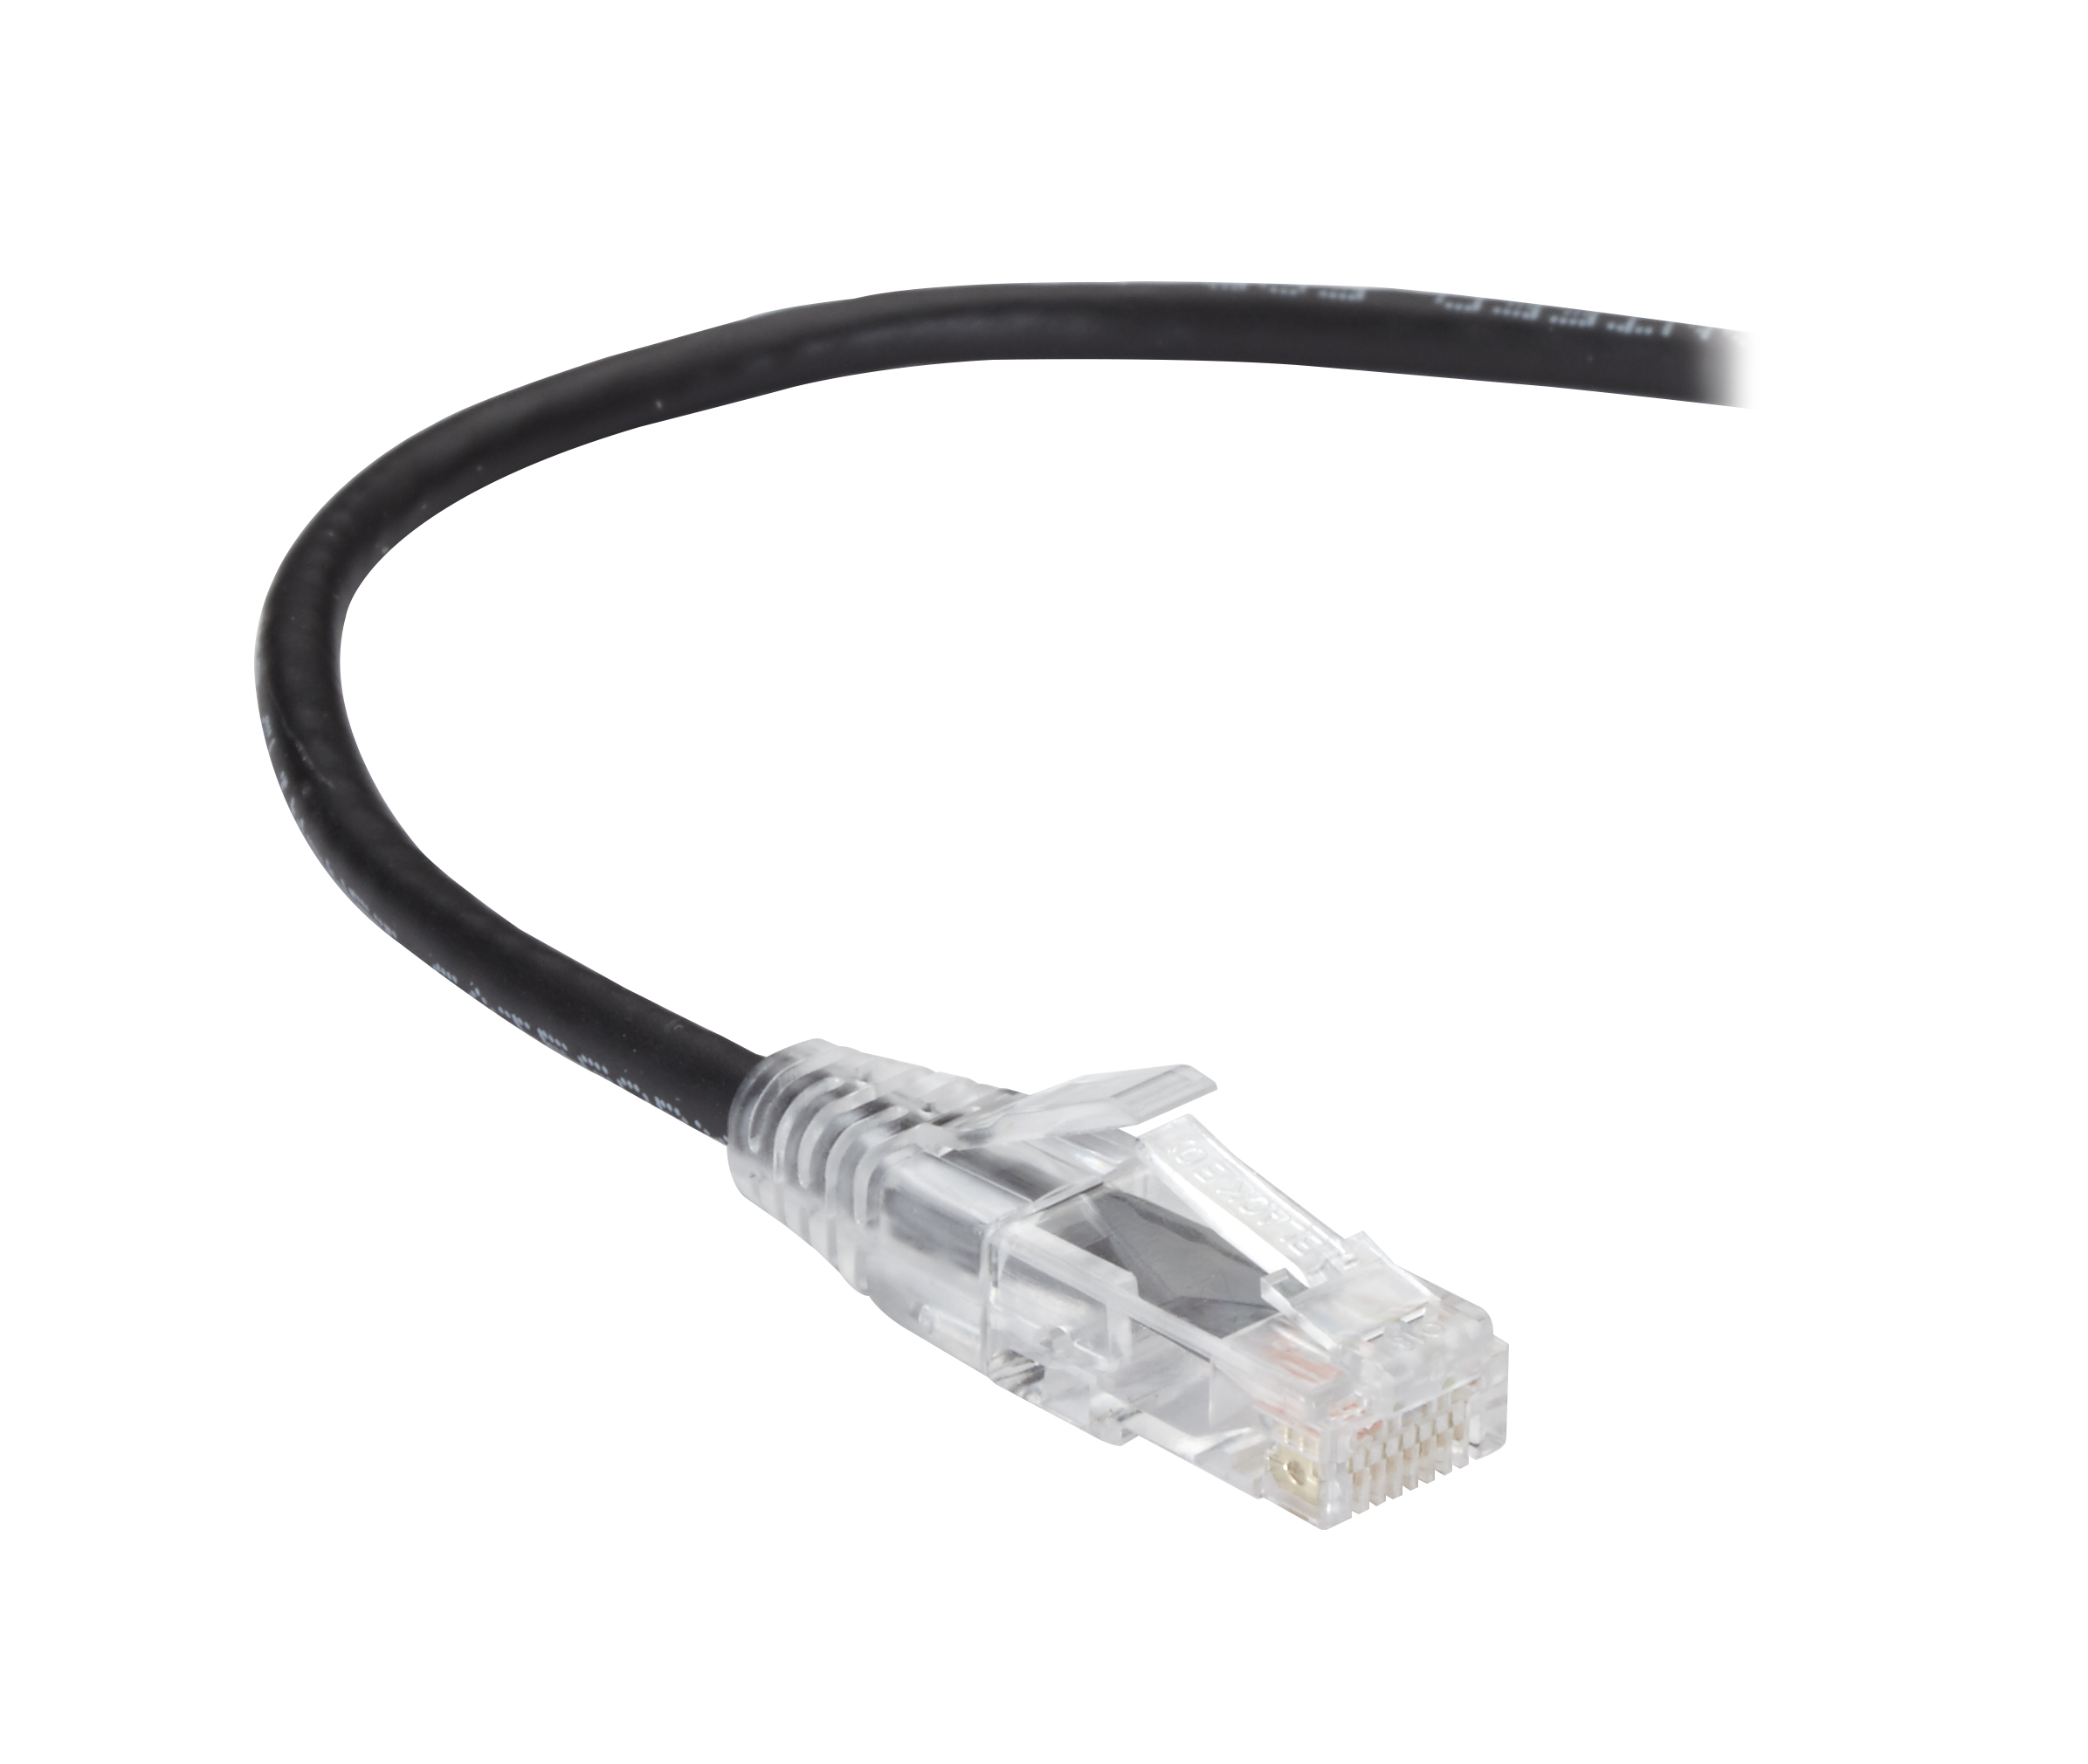 Black Box 3 BL 25-PK CAT6 250MHz Ethernet Patch Cable UTP PVC 